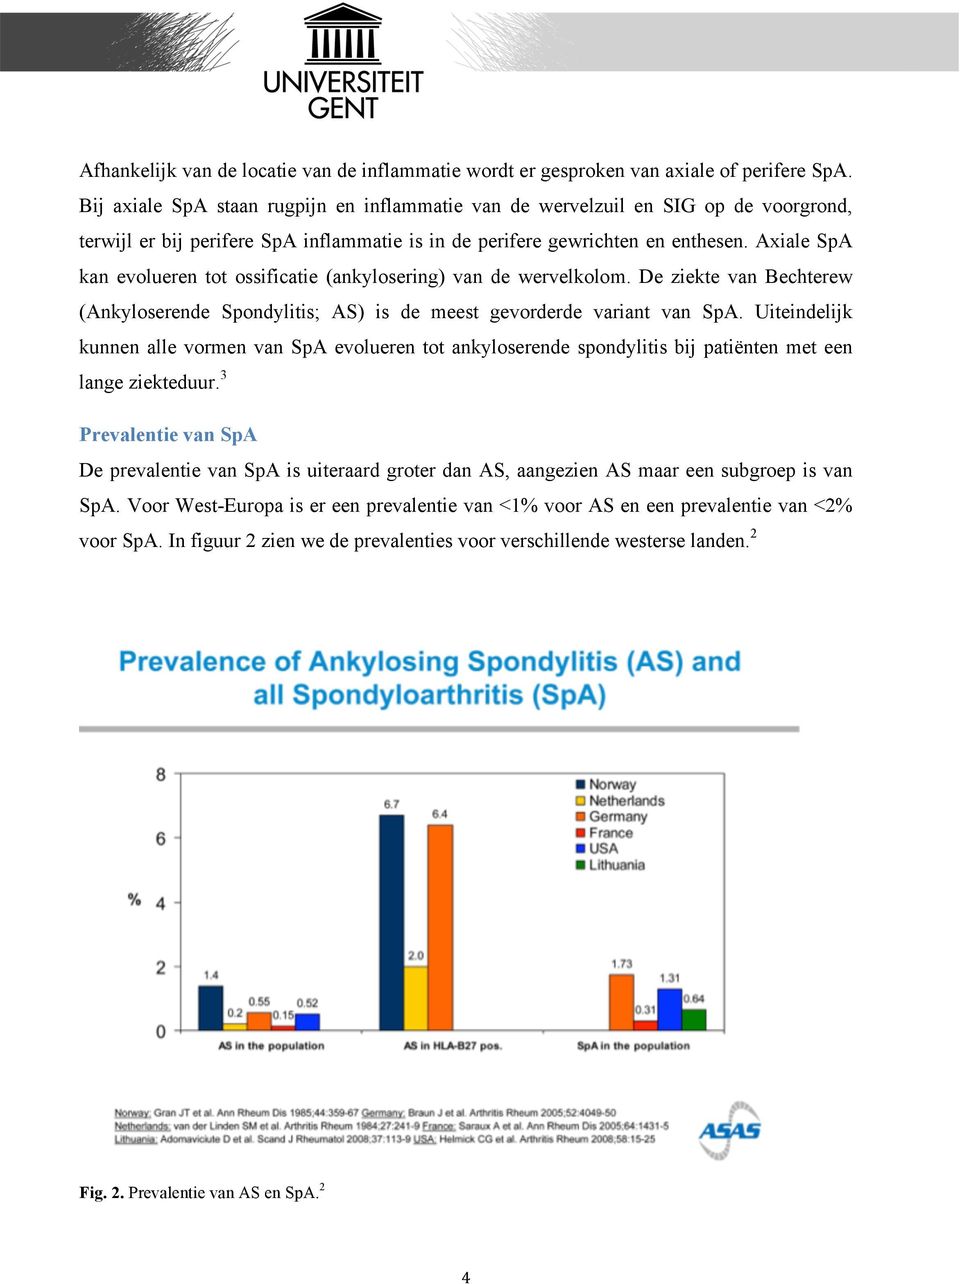 Axiale SpA kan evolueren tot ossificatie (ankylosering) van de wervelkolom. De ziekte van Bechterew (Ankyloserende Spondylitis; AS) is de meest gevorderde variant van SpA.